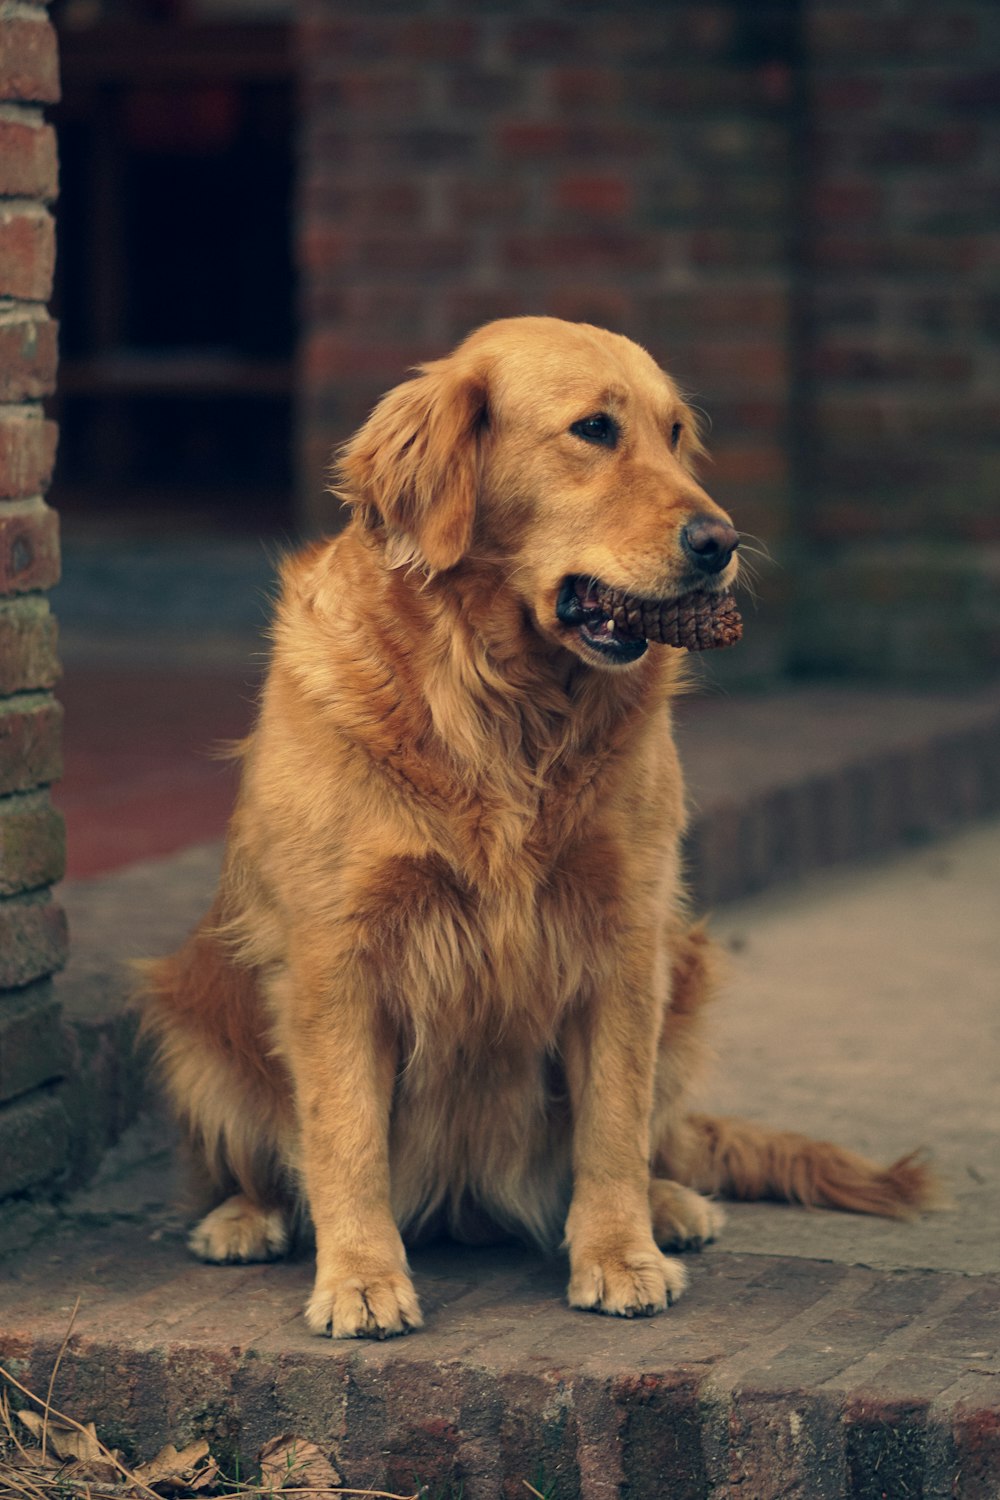 a brown dog sitting on a sidewalk next to a brick wall